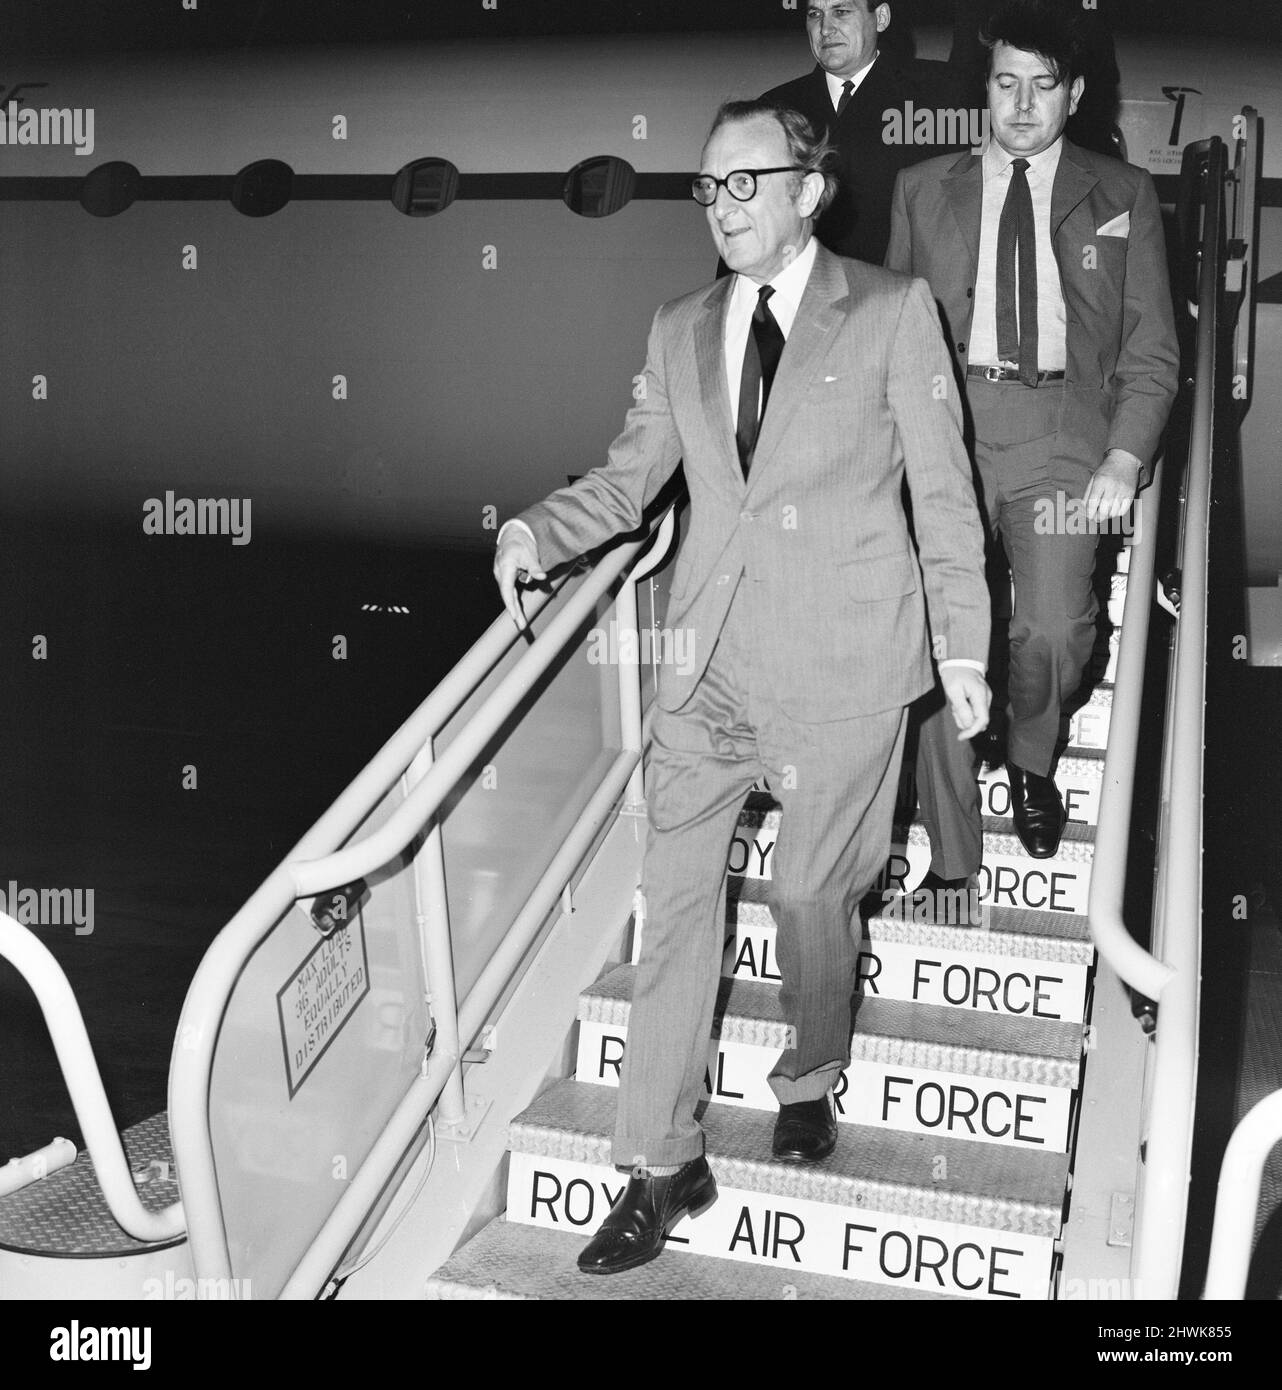 Il Segretario di Stato per la Difesa Lord Carrington arriva all'aeroporto di Heathrow da Roma dove ha avuto colloqui con il primo Ministro Dom Mintoff di Malta durante la crisi in corso. 28th gennaio 1972. Foto Stock